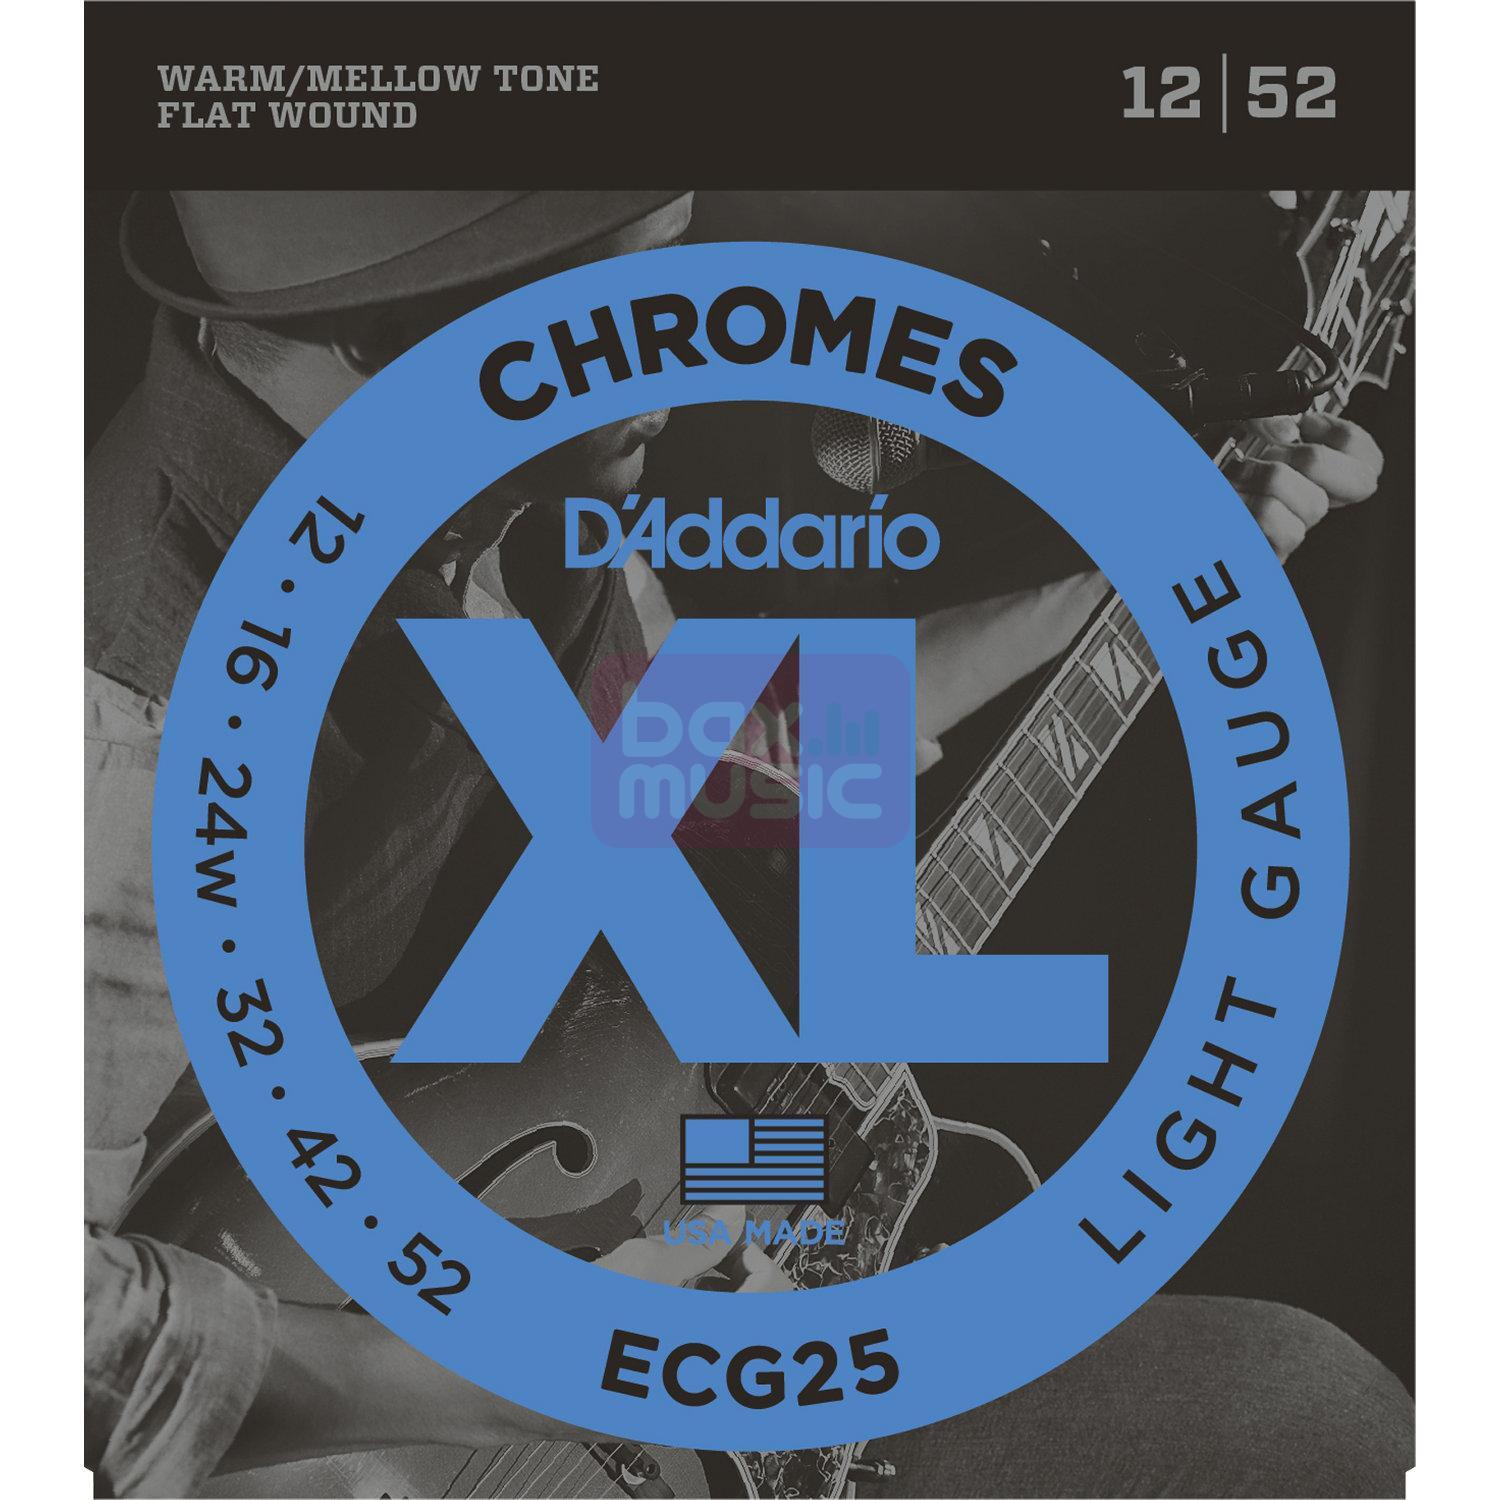 D'ADDARIO Daddario ECG25 flatwound snarenset voor elektrische gitaar